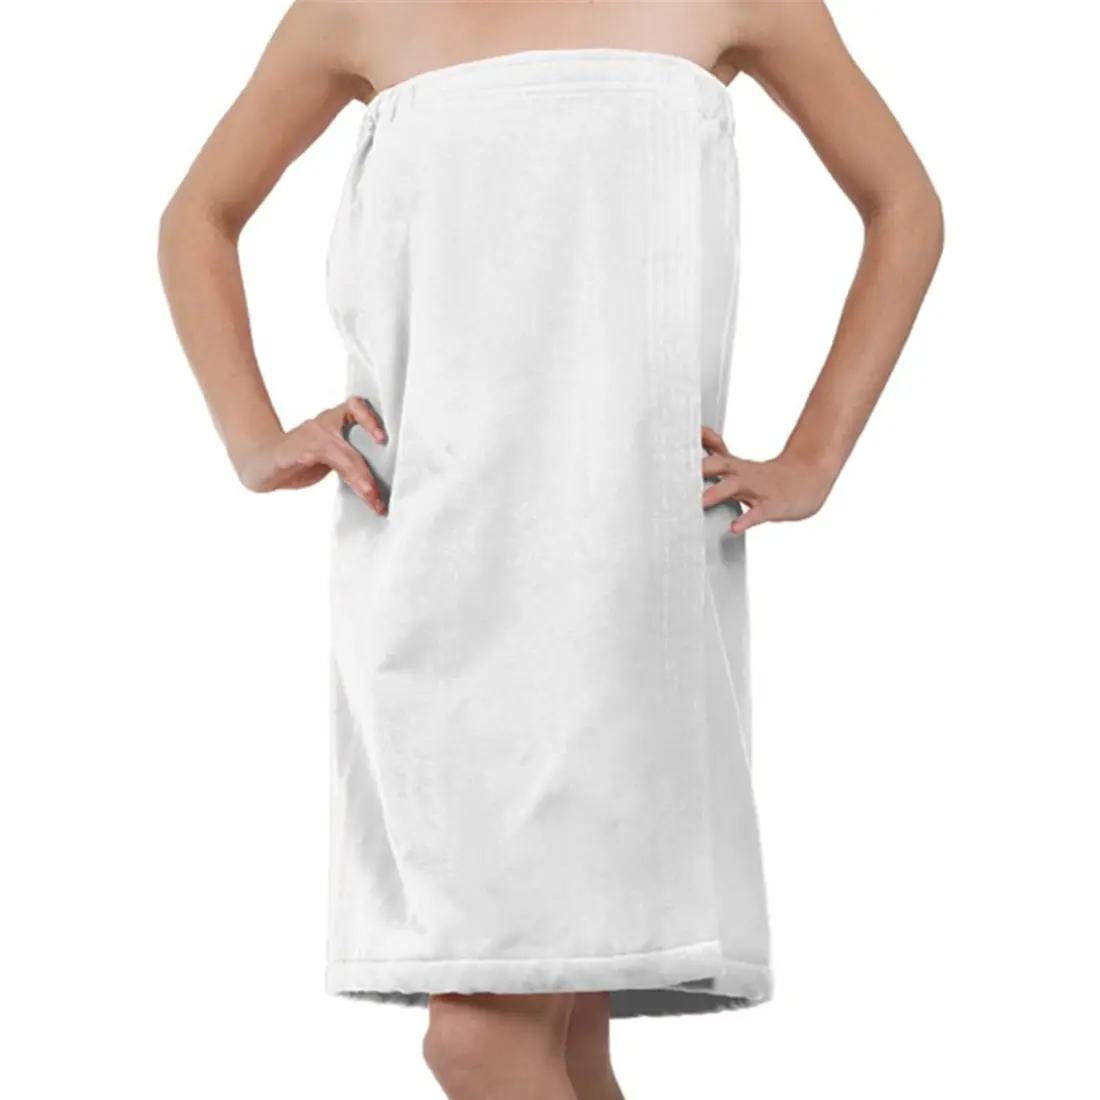 ผ้าขนหนูอาบน้ำเทอร์รี่สปาผ้าห่อตัวอาบน้ำผ้ากำมะหยี่เทอร์ราสำหรับผู้หญิงที่มีการปิดสีขาวขนาด XXL